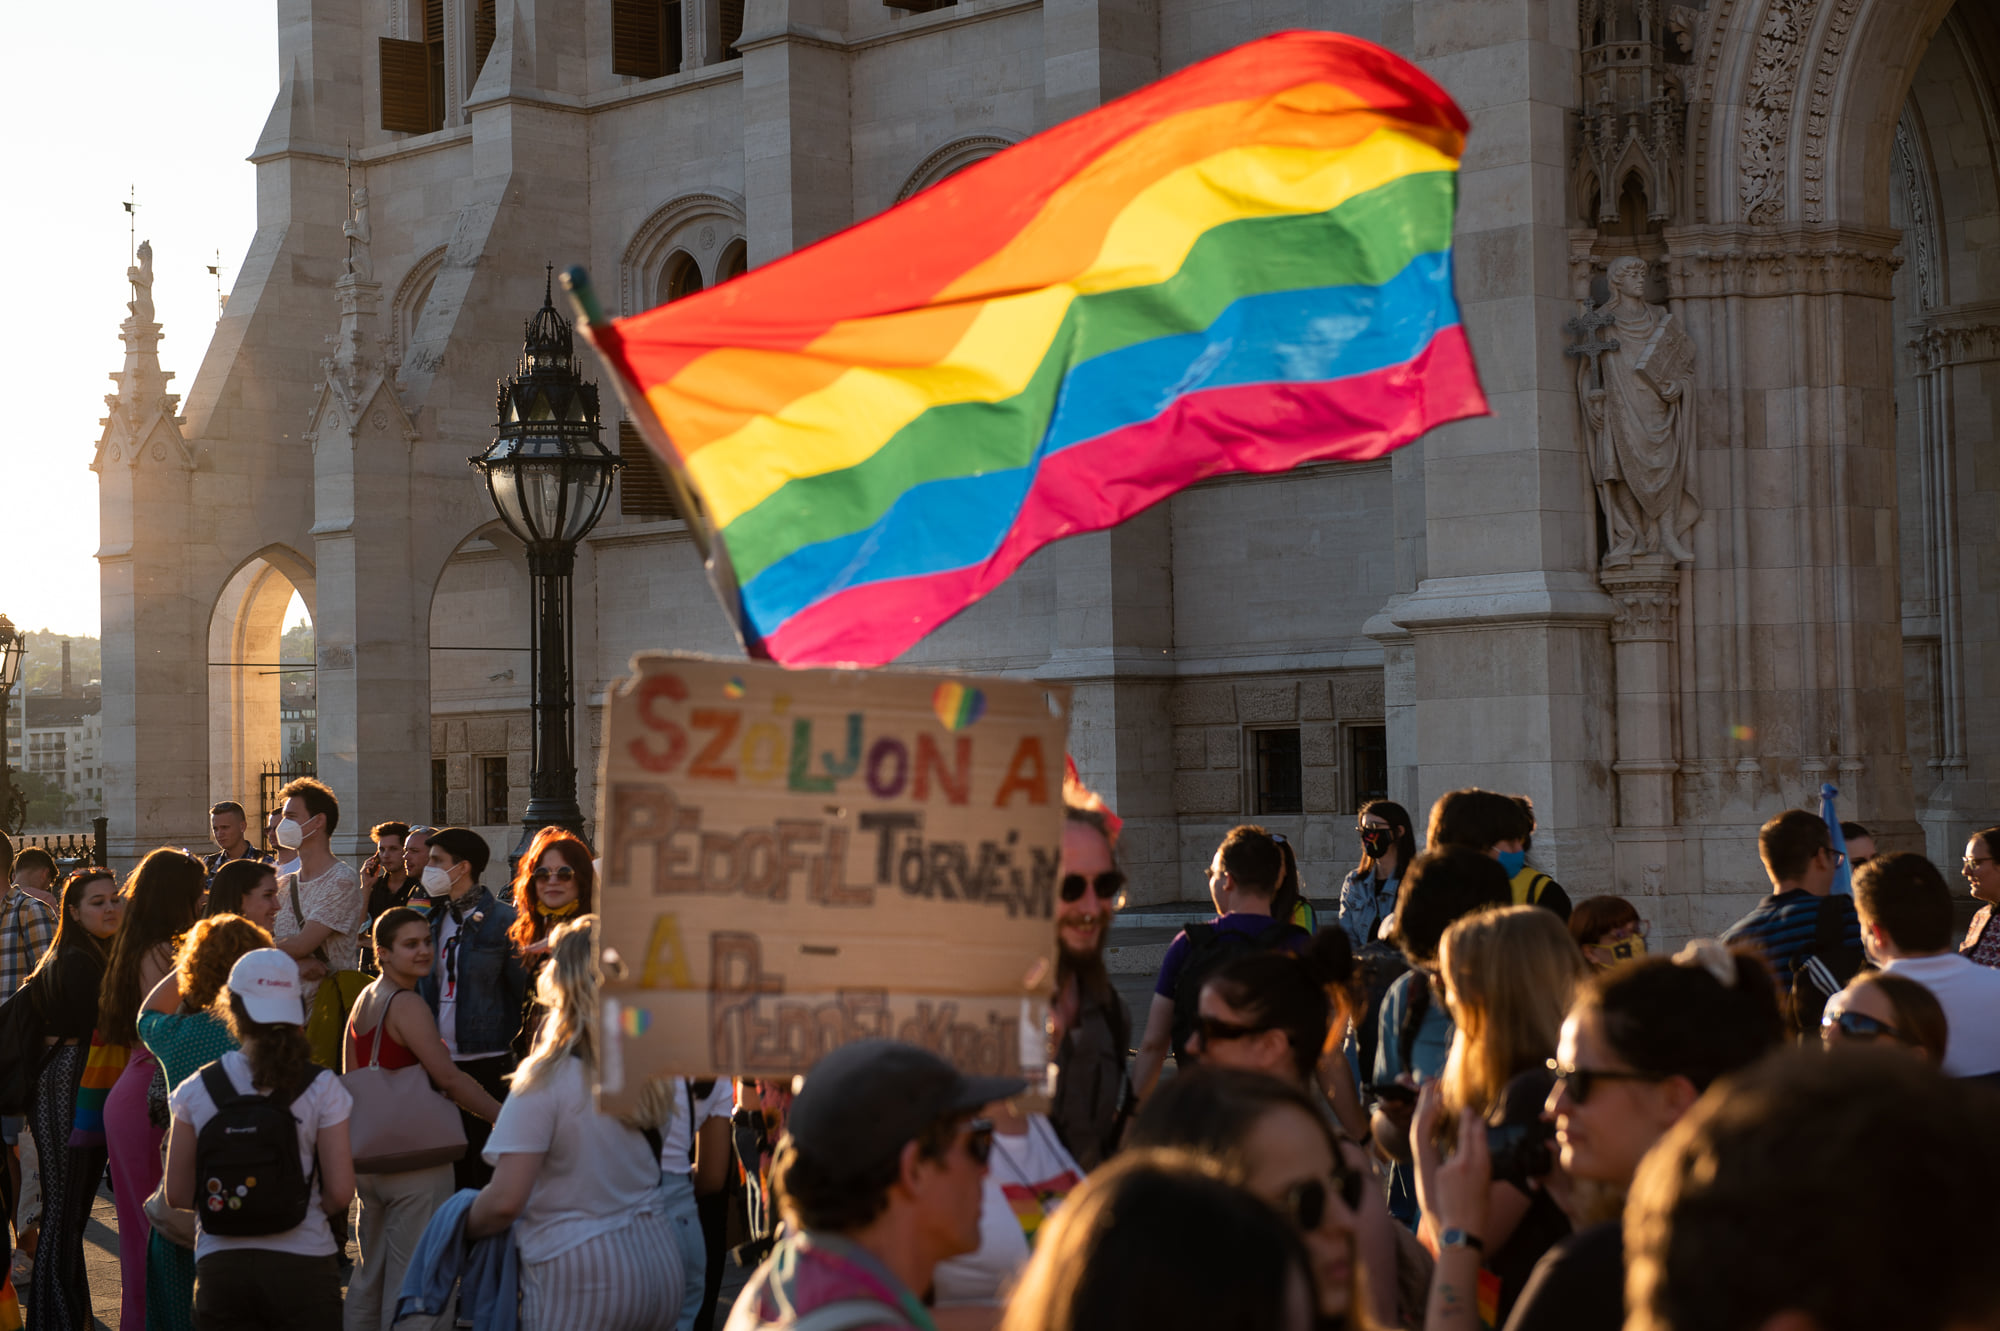 demo împotriva legii homofobe